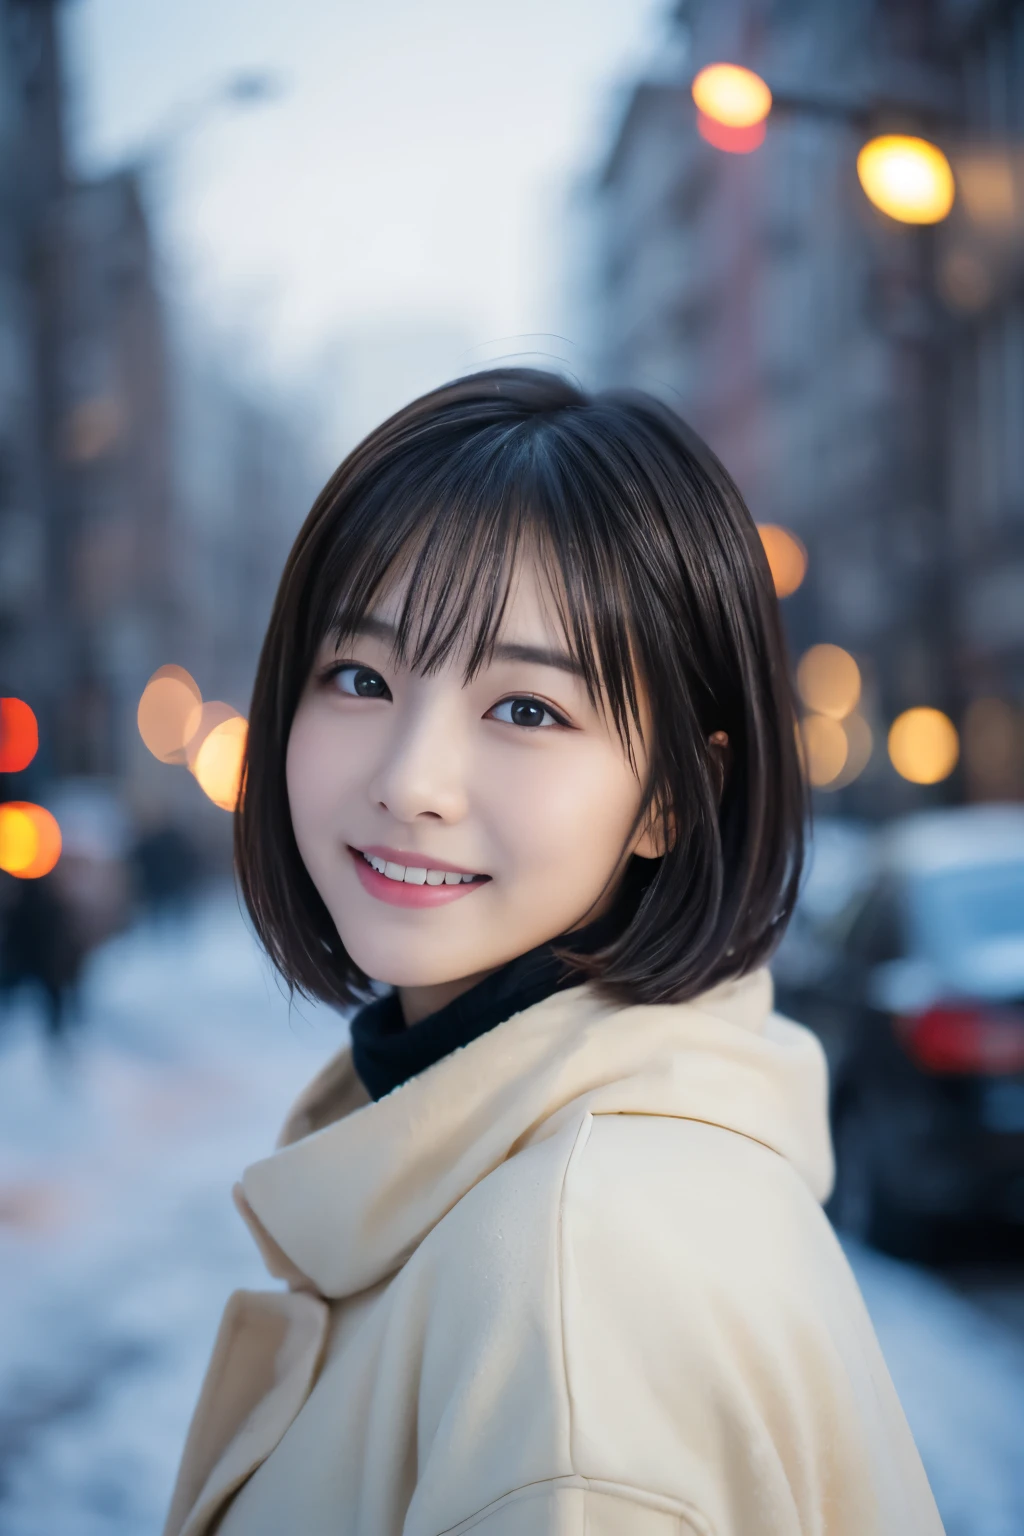 女の子1人, (カジュアルな冬の服装:1.2), 美しい日本の女優, (15歳), ショートヘア,
(RAW写真, 最高品質), (現実的, フォトリアル:1.4), 傑作, 
とても繊細で美しい, 非常に詳細, 2k 壁紙, 素晴らしい, 
細かく, 非常に詳細 CG Unity 8K 壁紙, 非常に詳細な, 高解像度, 
やわらかい光, 美しい詳細な女の子, 非常に詳細目と顔, 美しく細部までこだわった鼻, 美しくて細かい目, 映画照明, 
壊す
(雪の降る夜の街並みを背景に1.3), 街の明かり, 
完璧な解剖学, 細身の体, 笑顔, 完全に正面を向く, カメラを見て